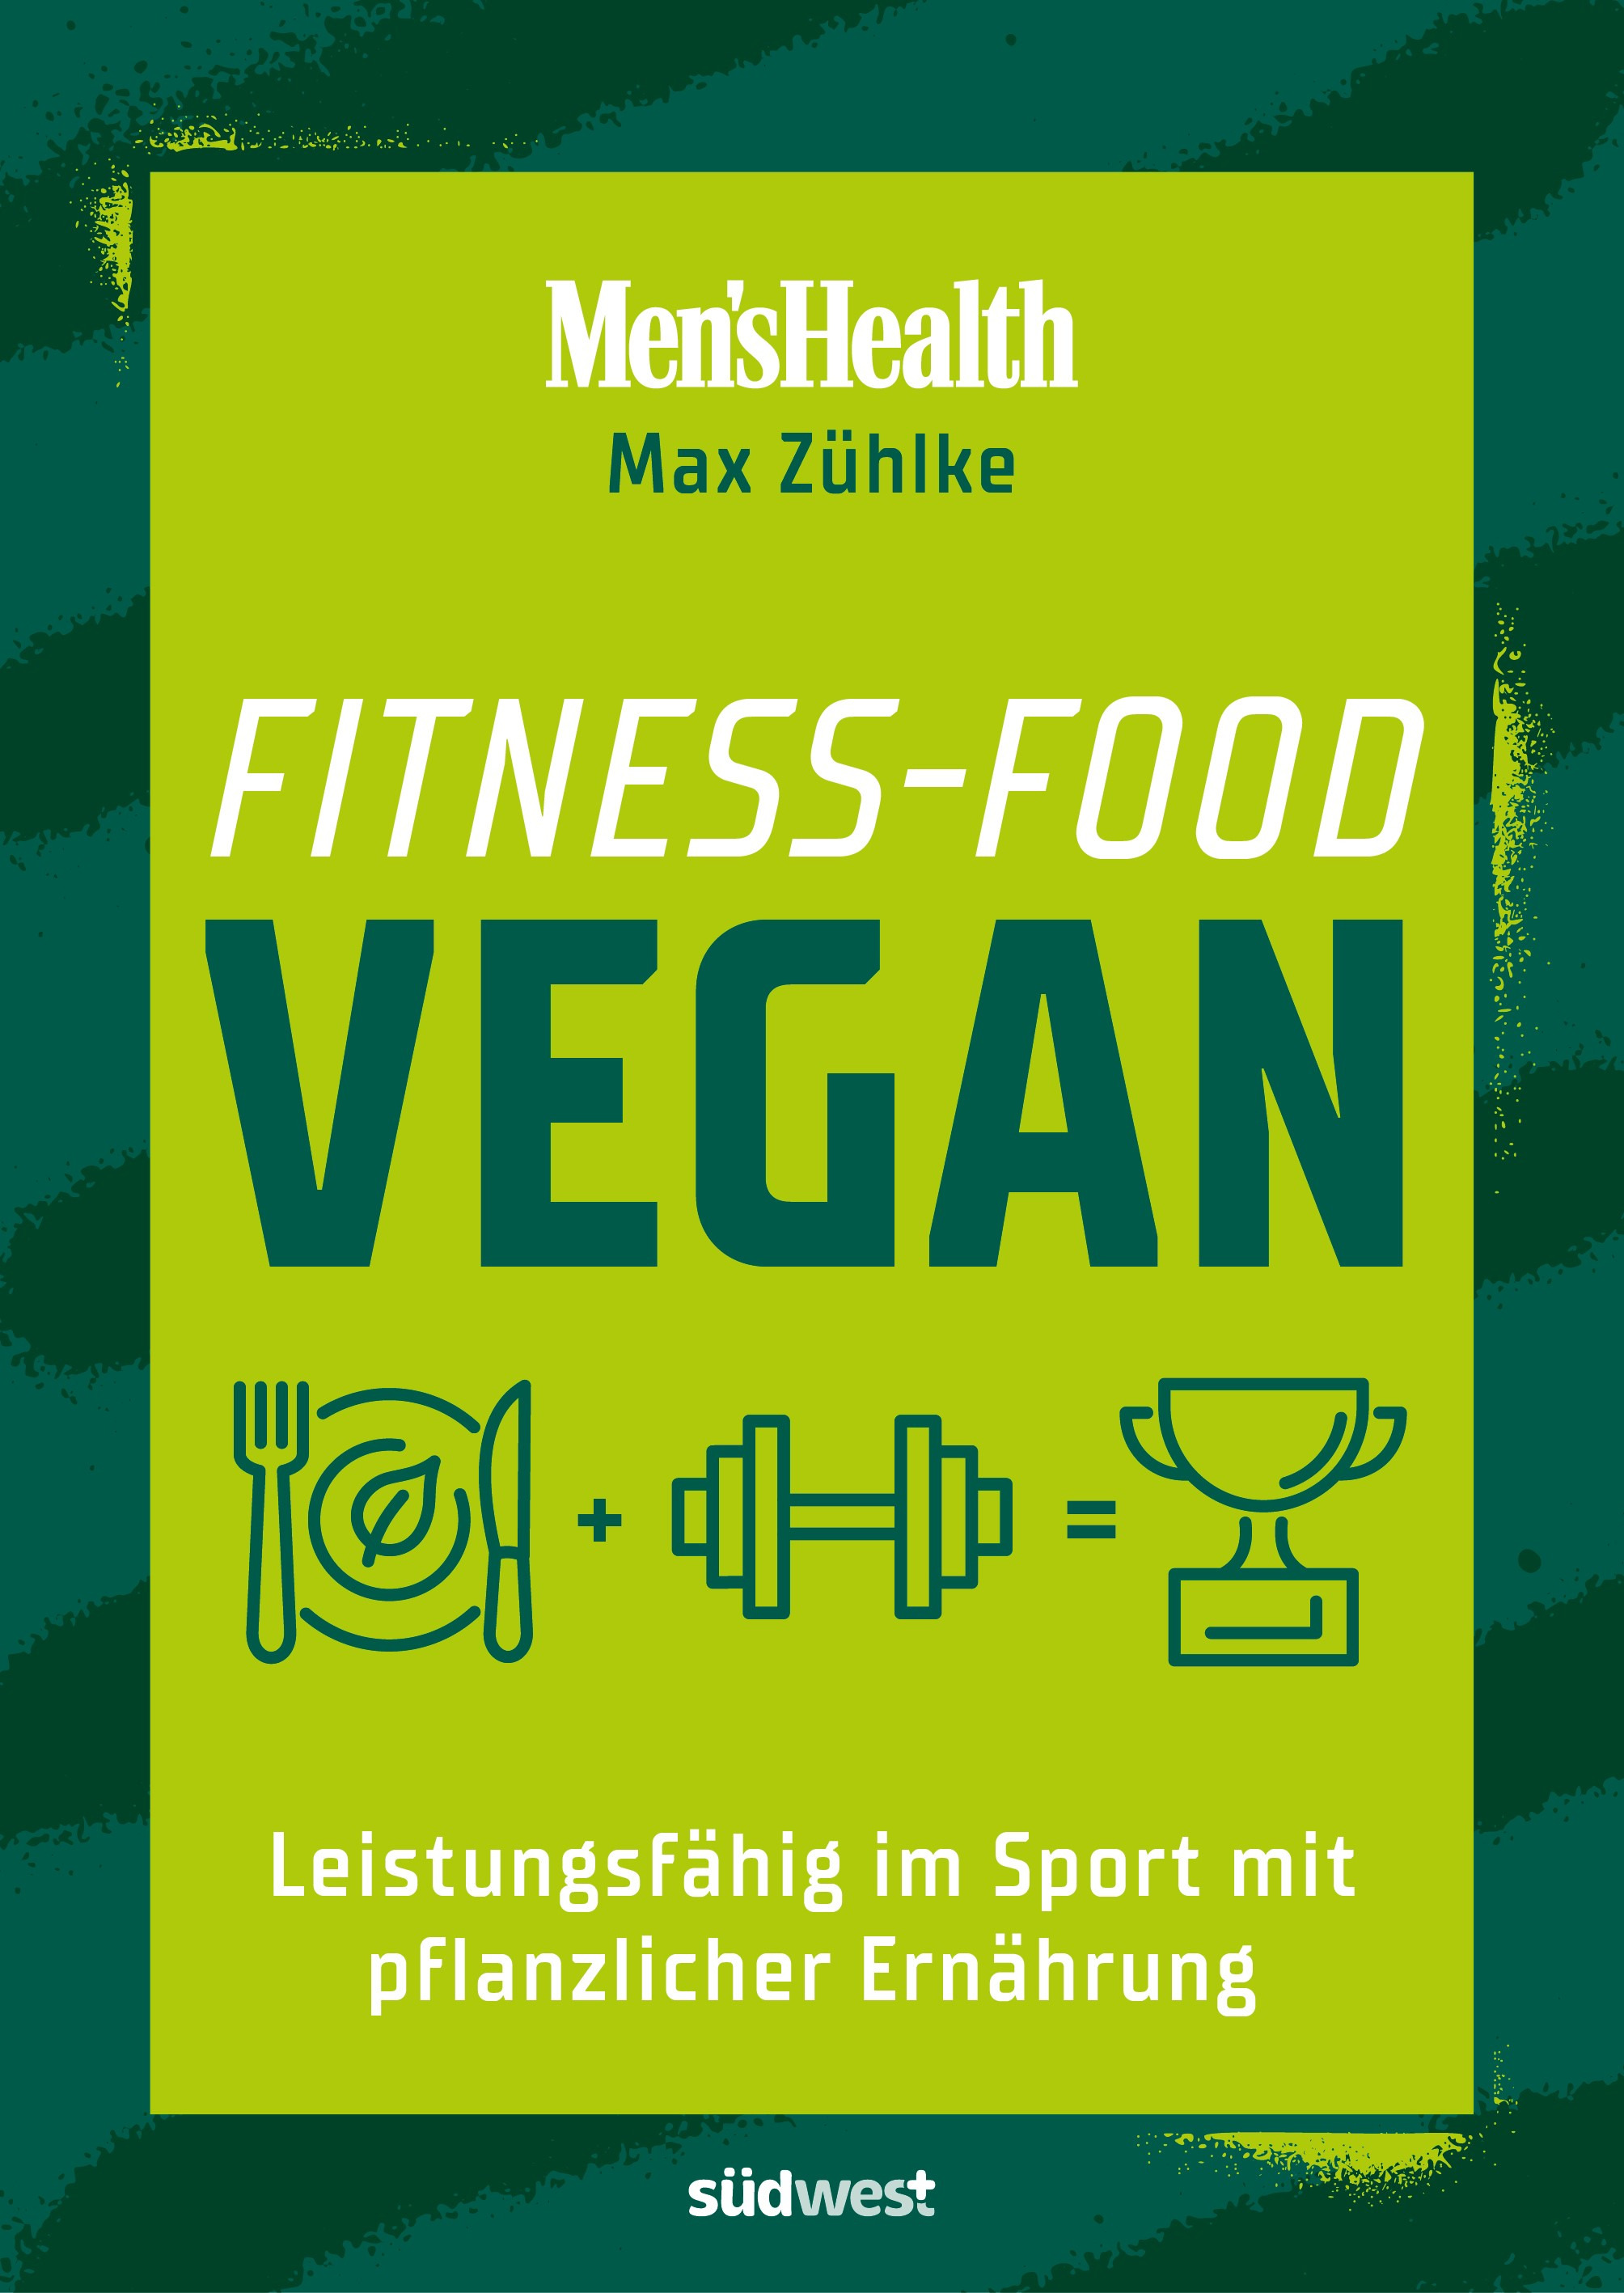 Fitness-Food Vegan (Men's Health) - Leistungsfähig im Sport mit pflanzlicher Ernährung